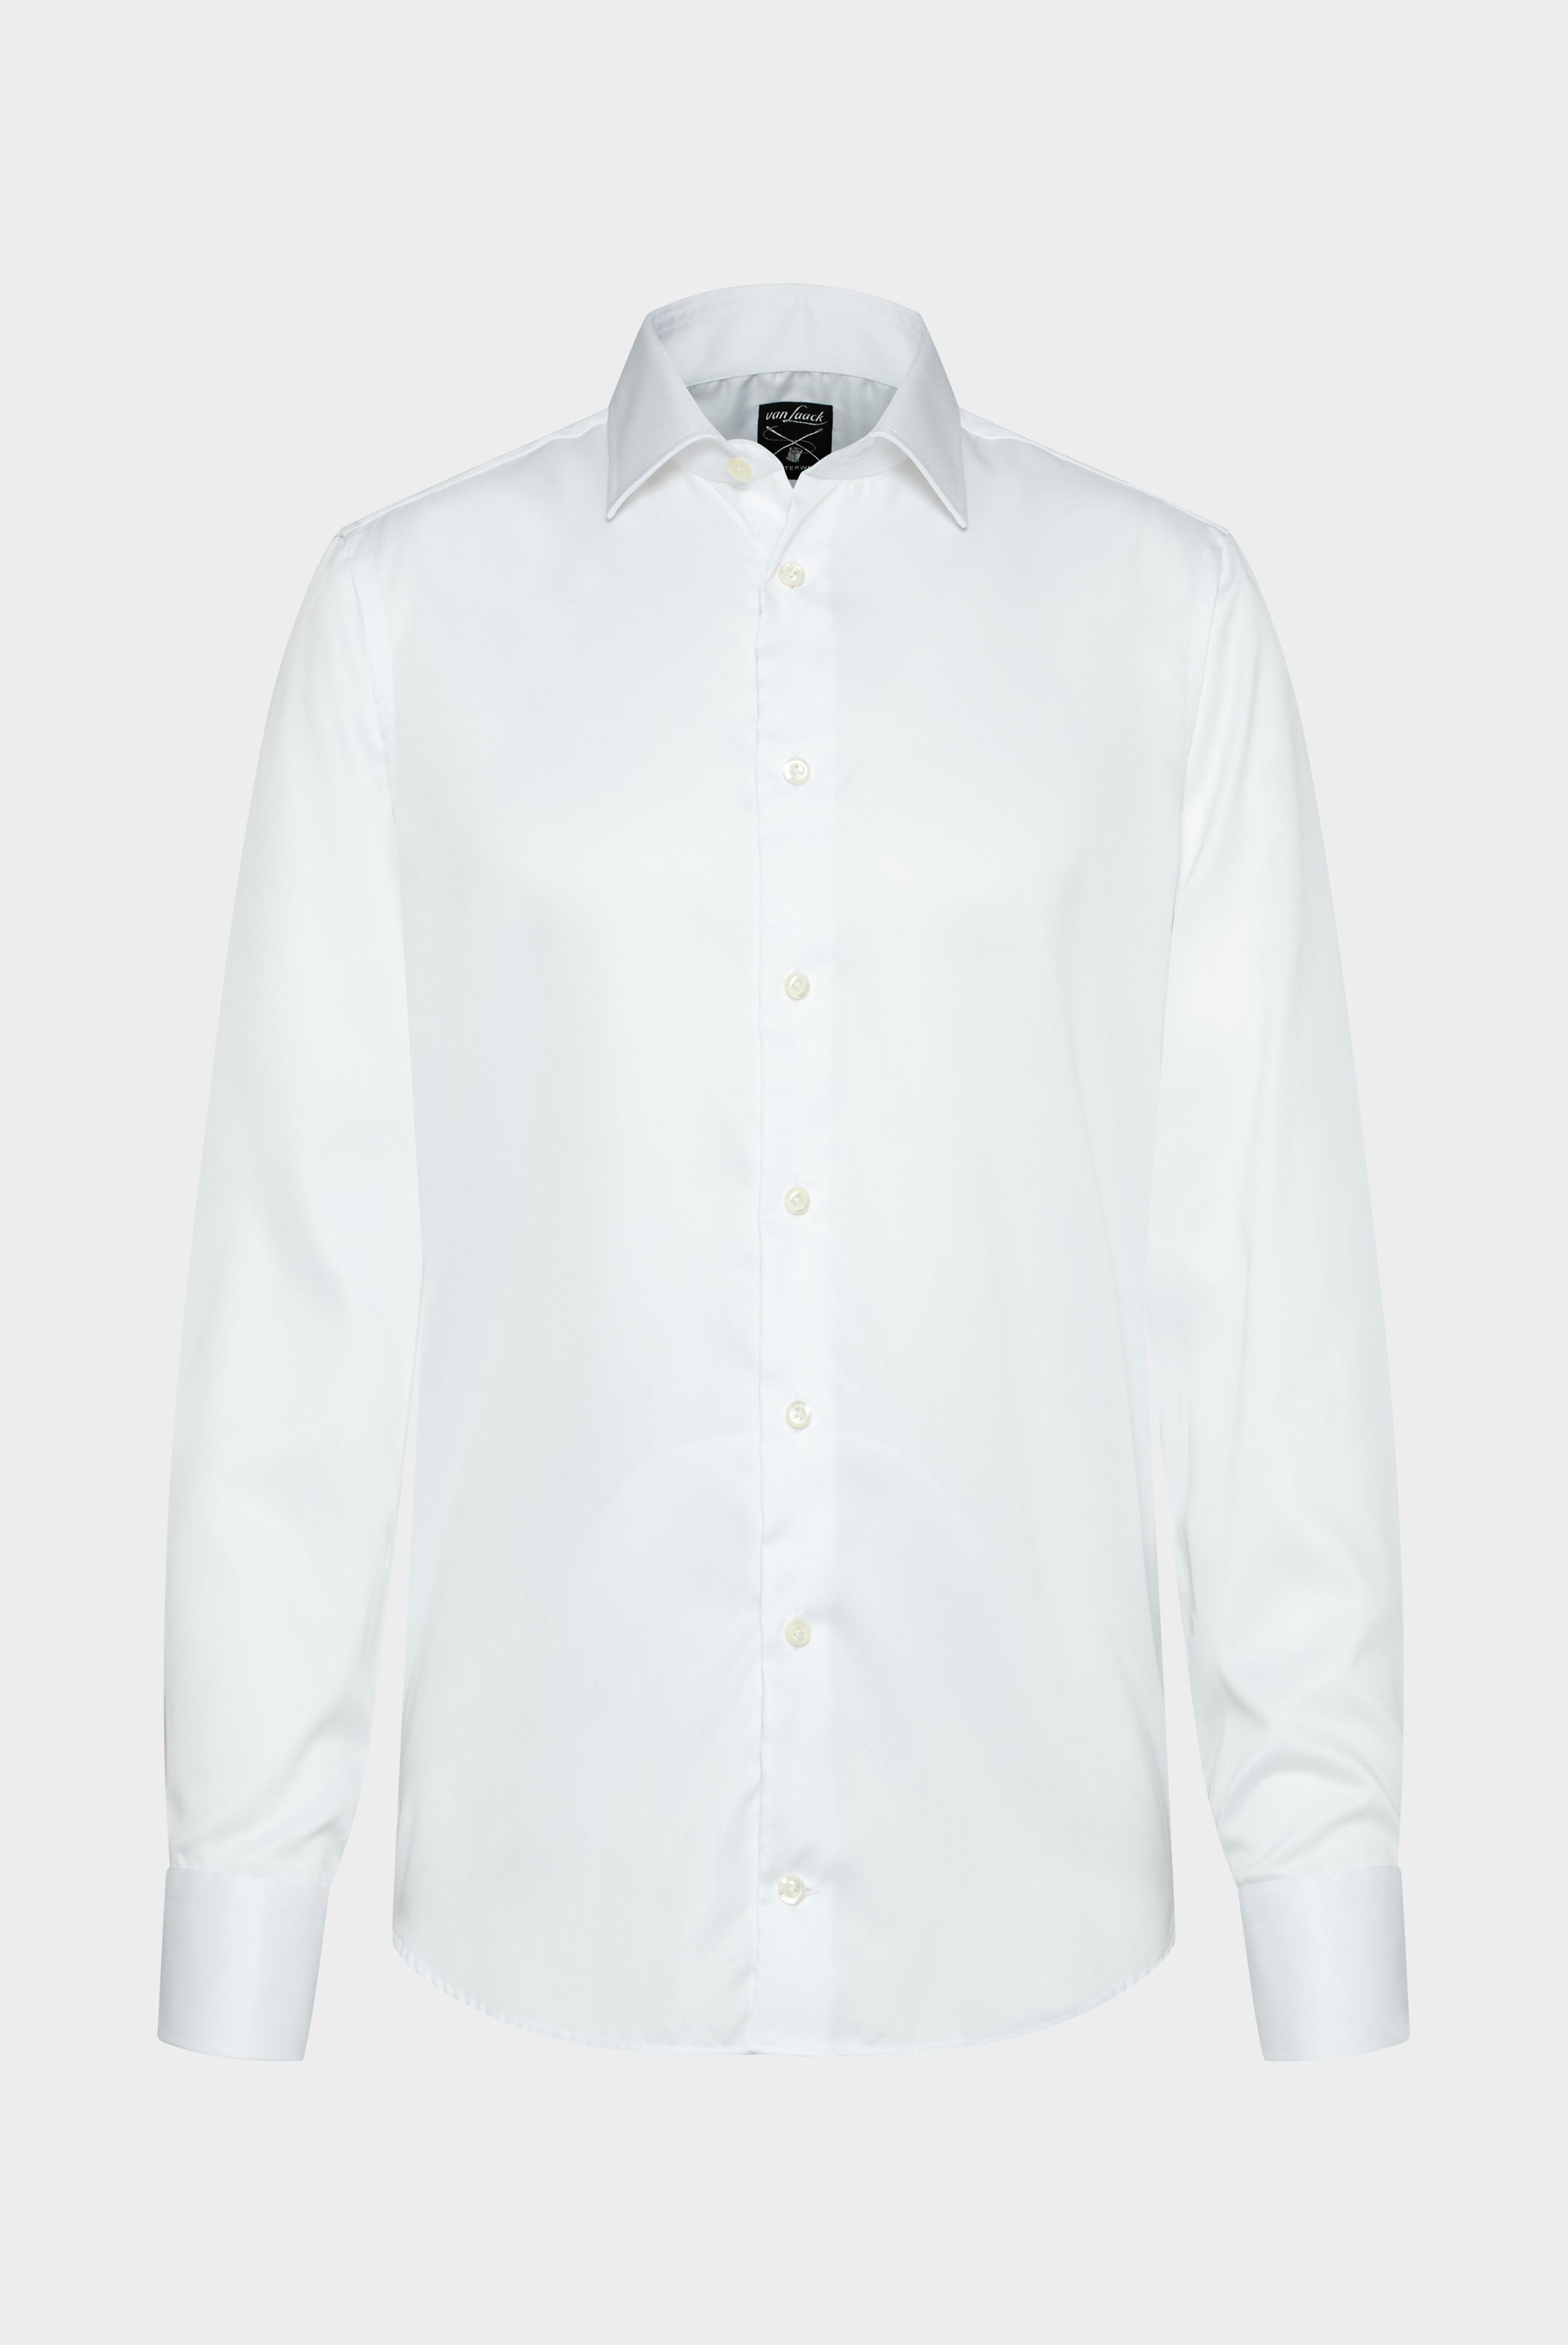 Bügelleichte Hemden+Bügelfreies Twill Hemd Tailor Fit+20.2011.BQ.132241.000.37